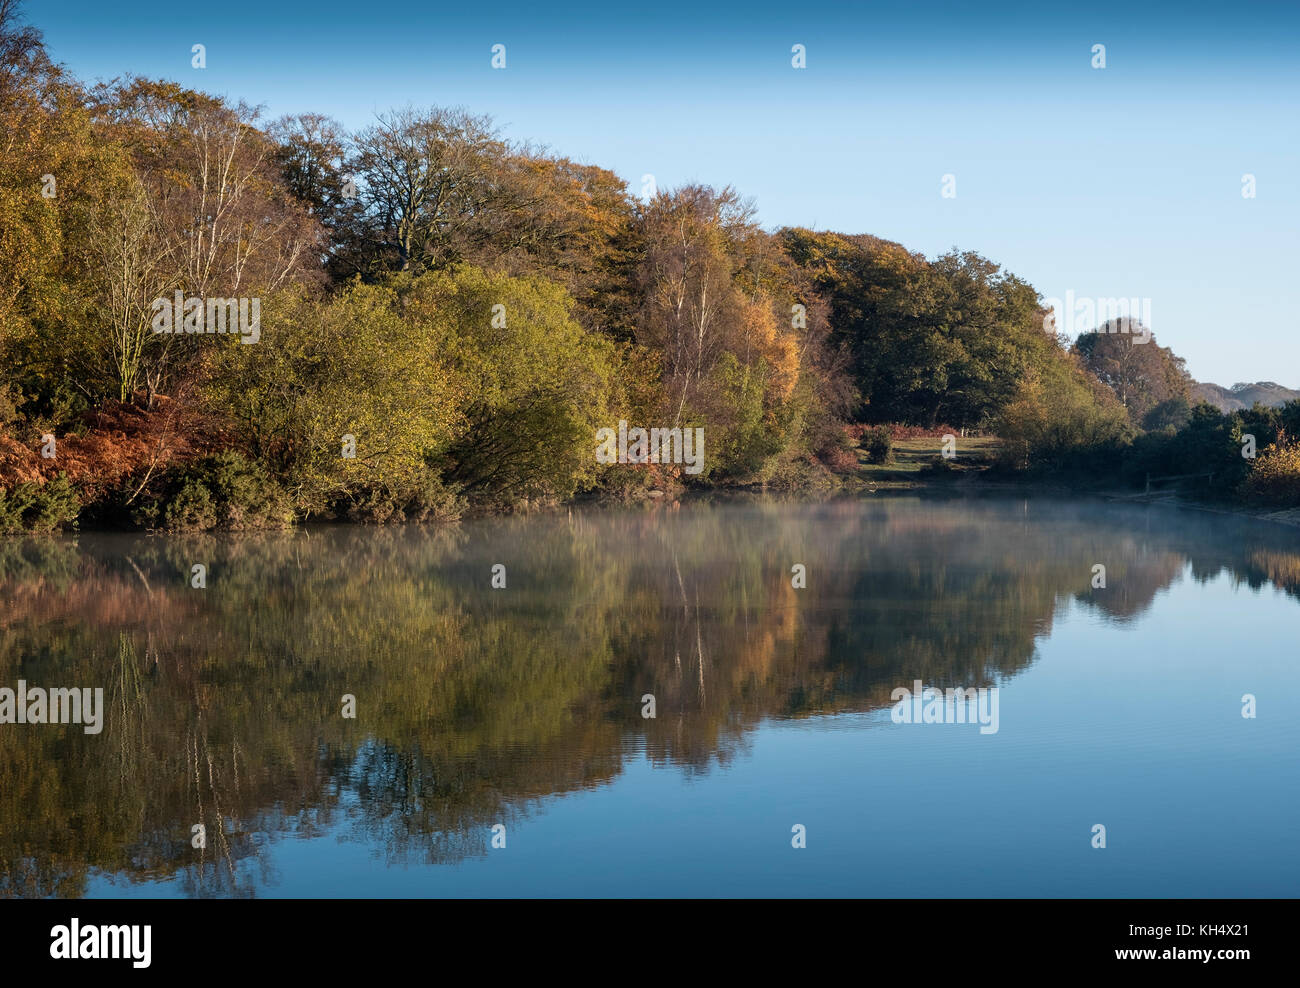 La mattina presto luce su Cadman's Pool, nella nuova foresta, mostra i colori dell'autunno di alberi ed arbusti riflessa nelle acque calme, Hampshire, Regno Unito Foto Stock